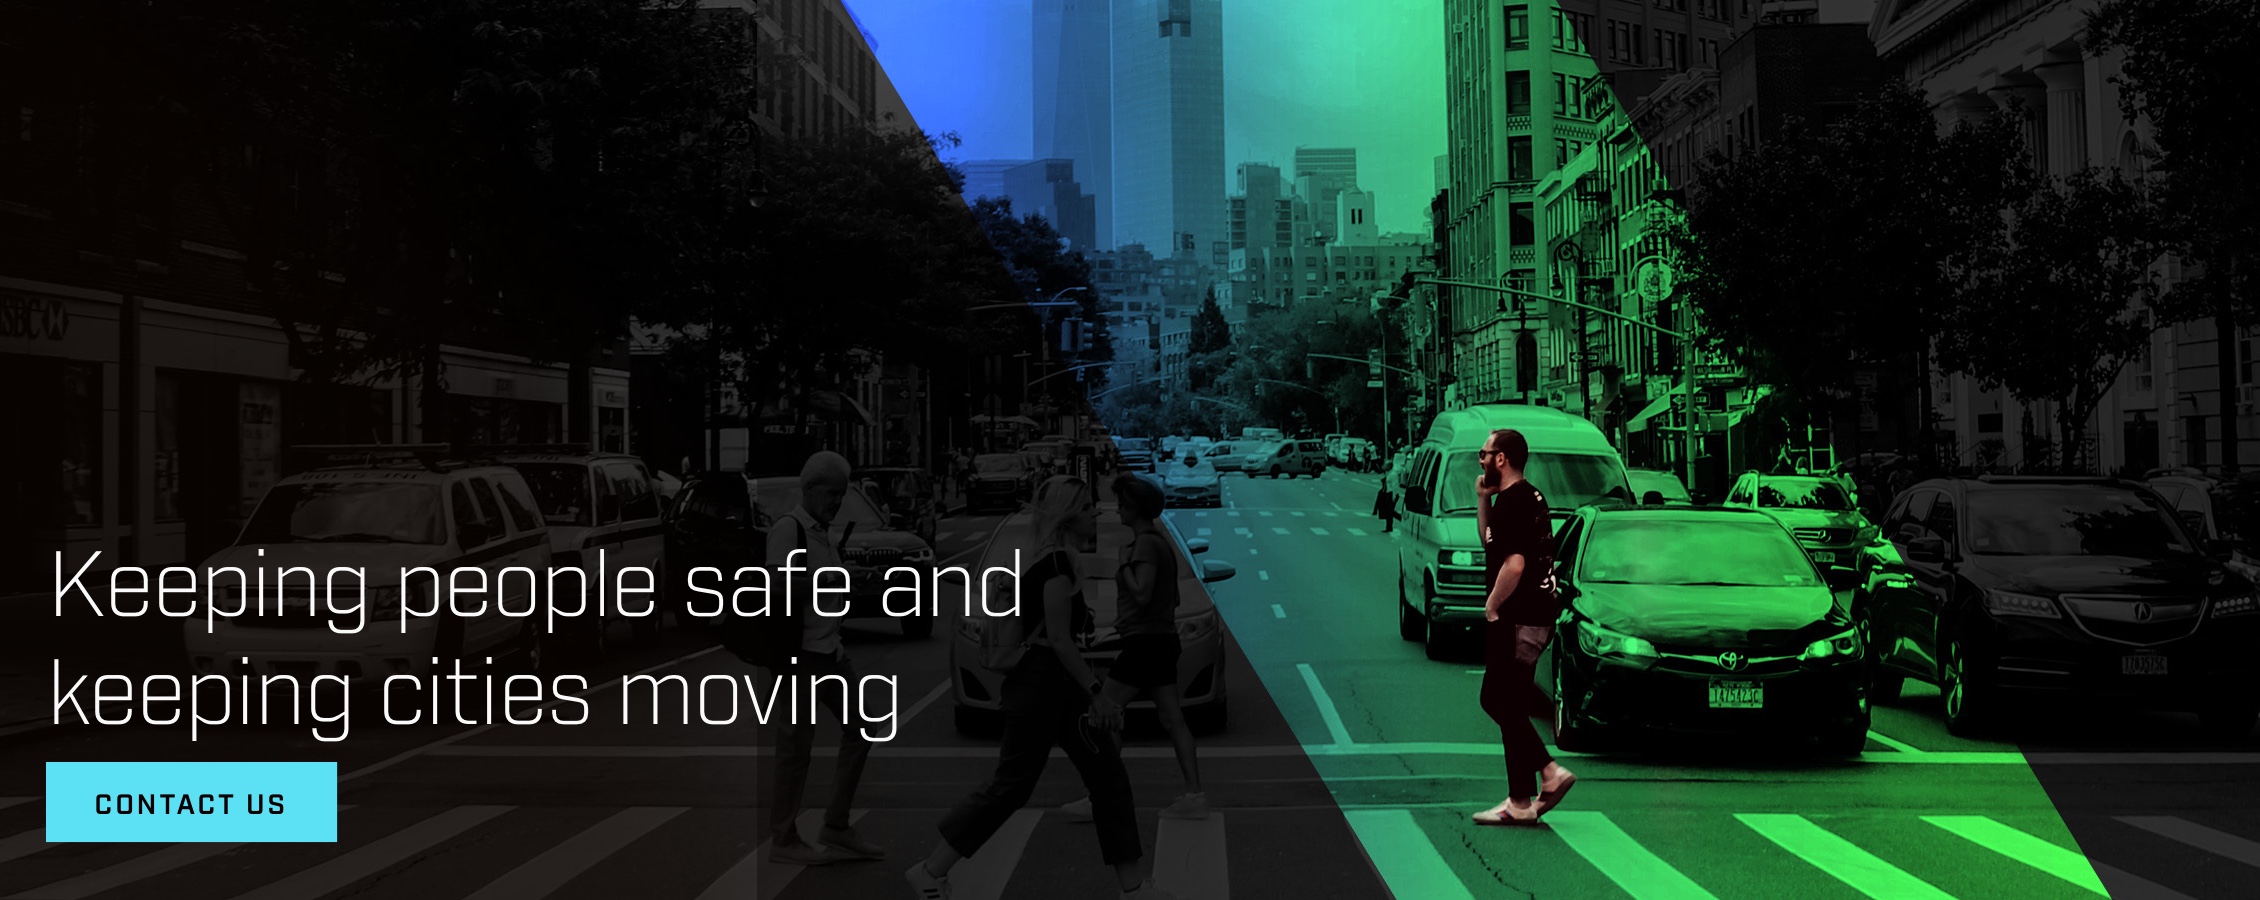 Mantener a las personas seguras y mantener las ciudades en movimiento. Más información